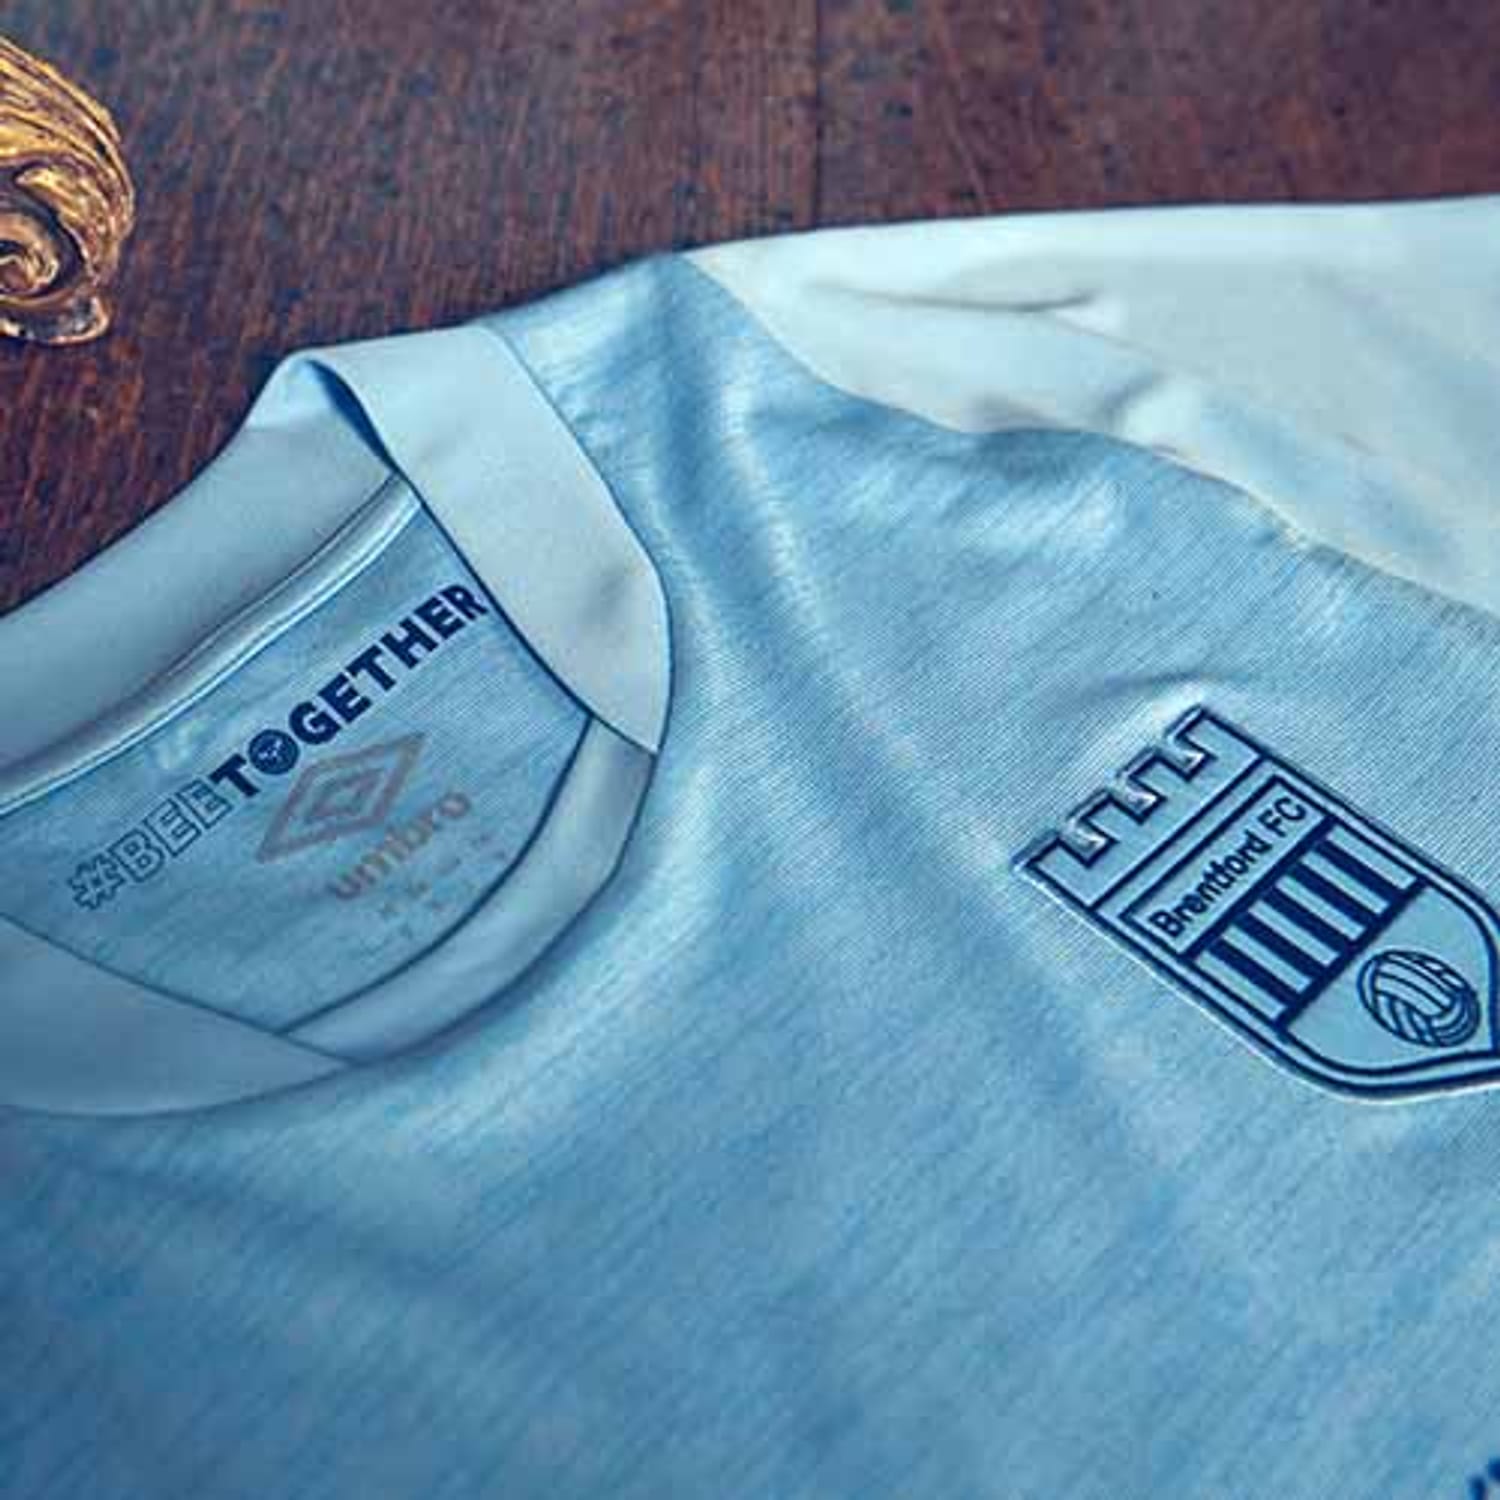 Premier League Brentford FC Jersey Shirt for Men